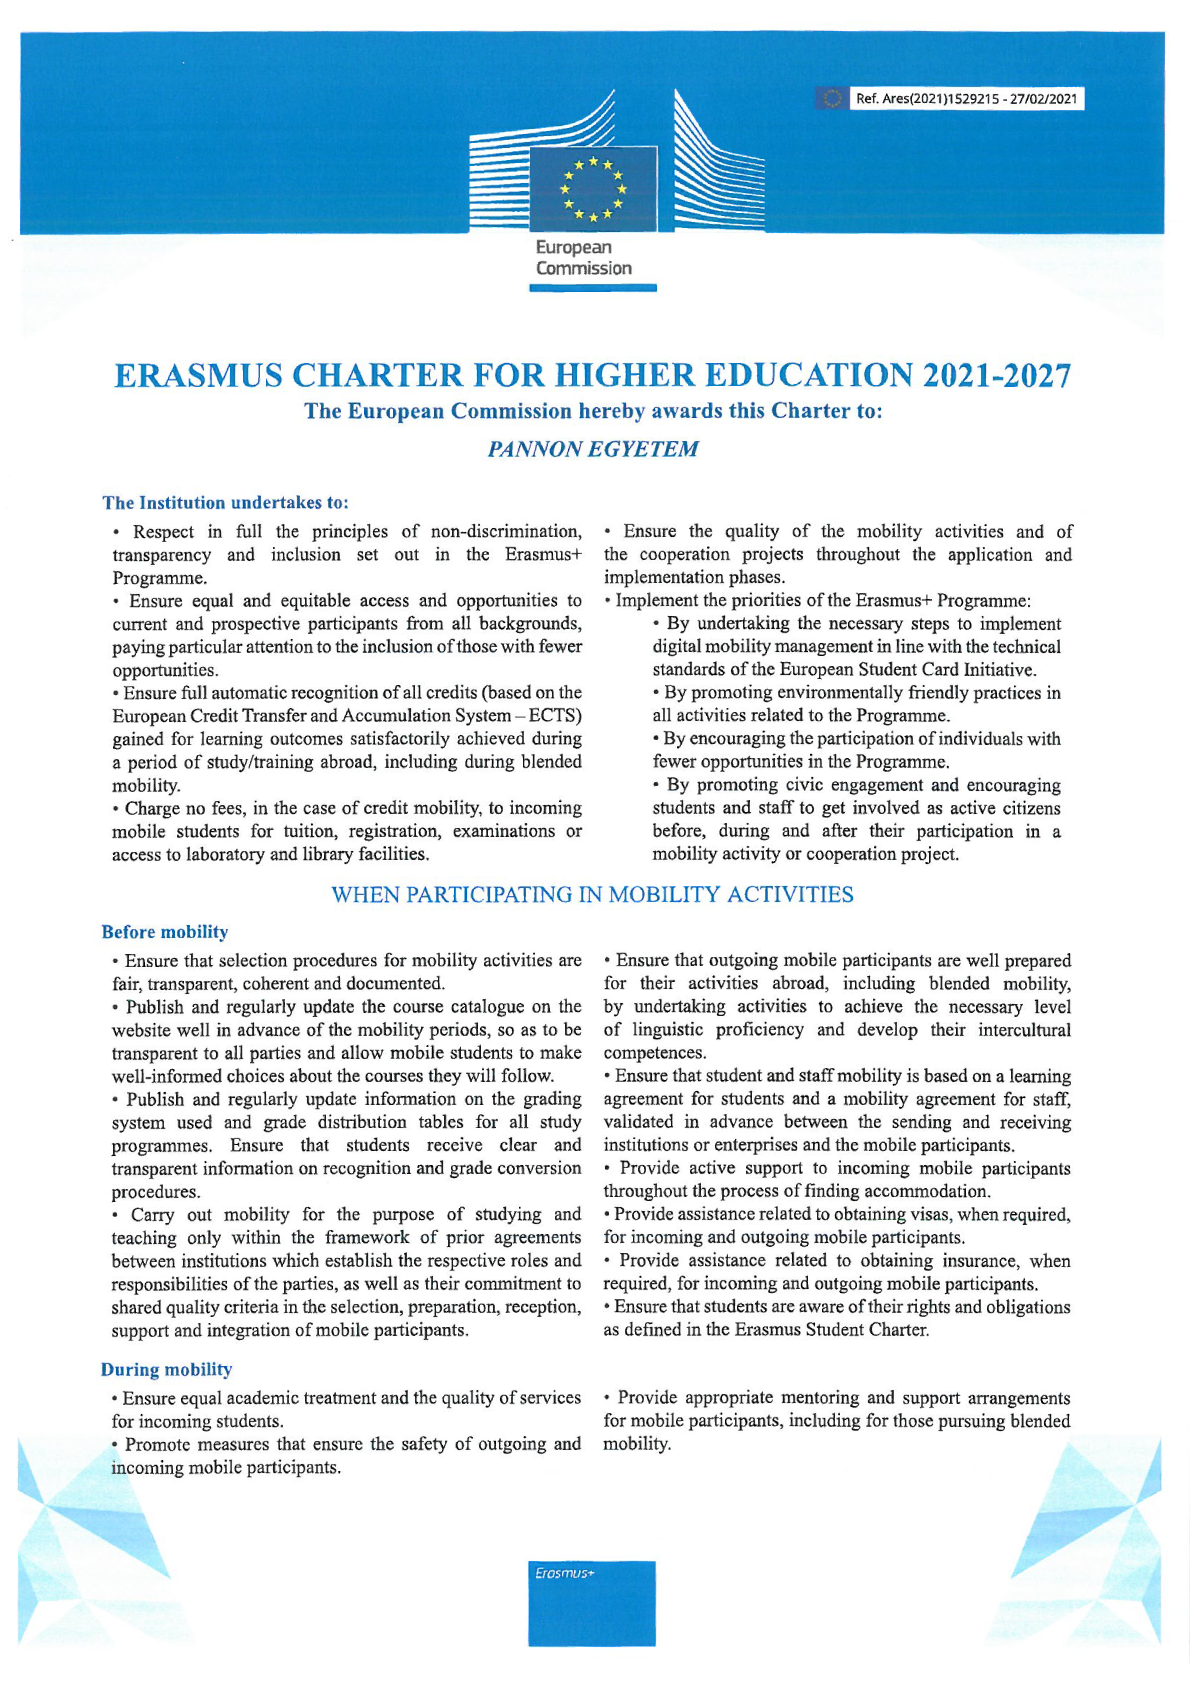 Erasmus Charter page1